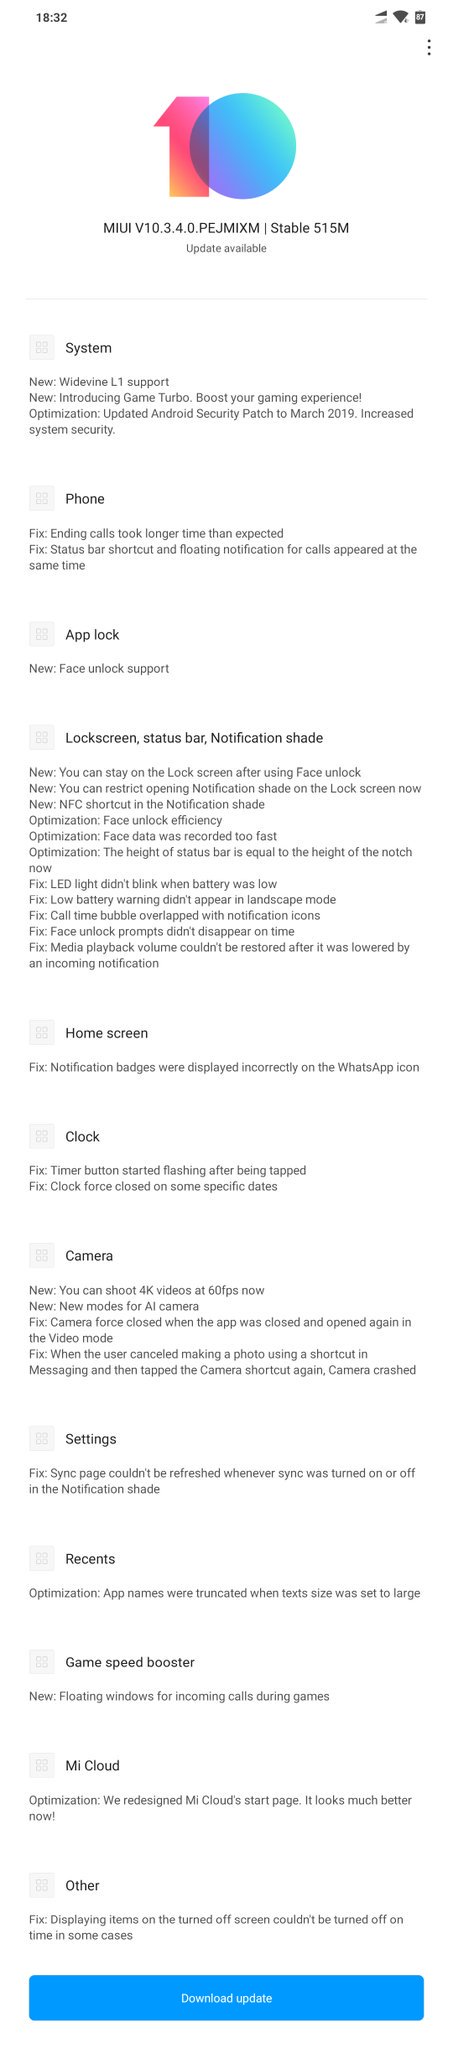 Xiaomi Pocophone F1 aktualizacja MIUI 10 Widevine L1 Netflix nagrywanie wideo 4K 60 fps